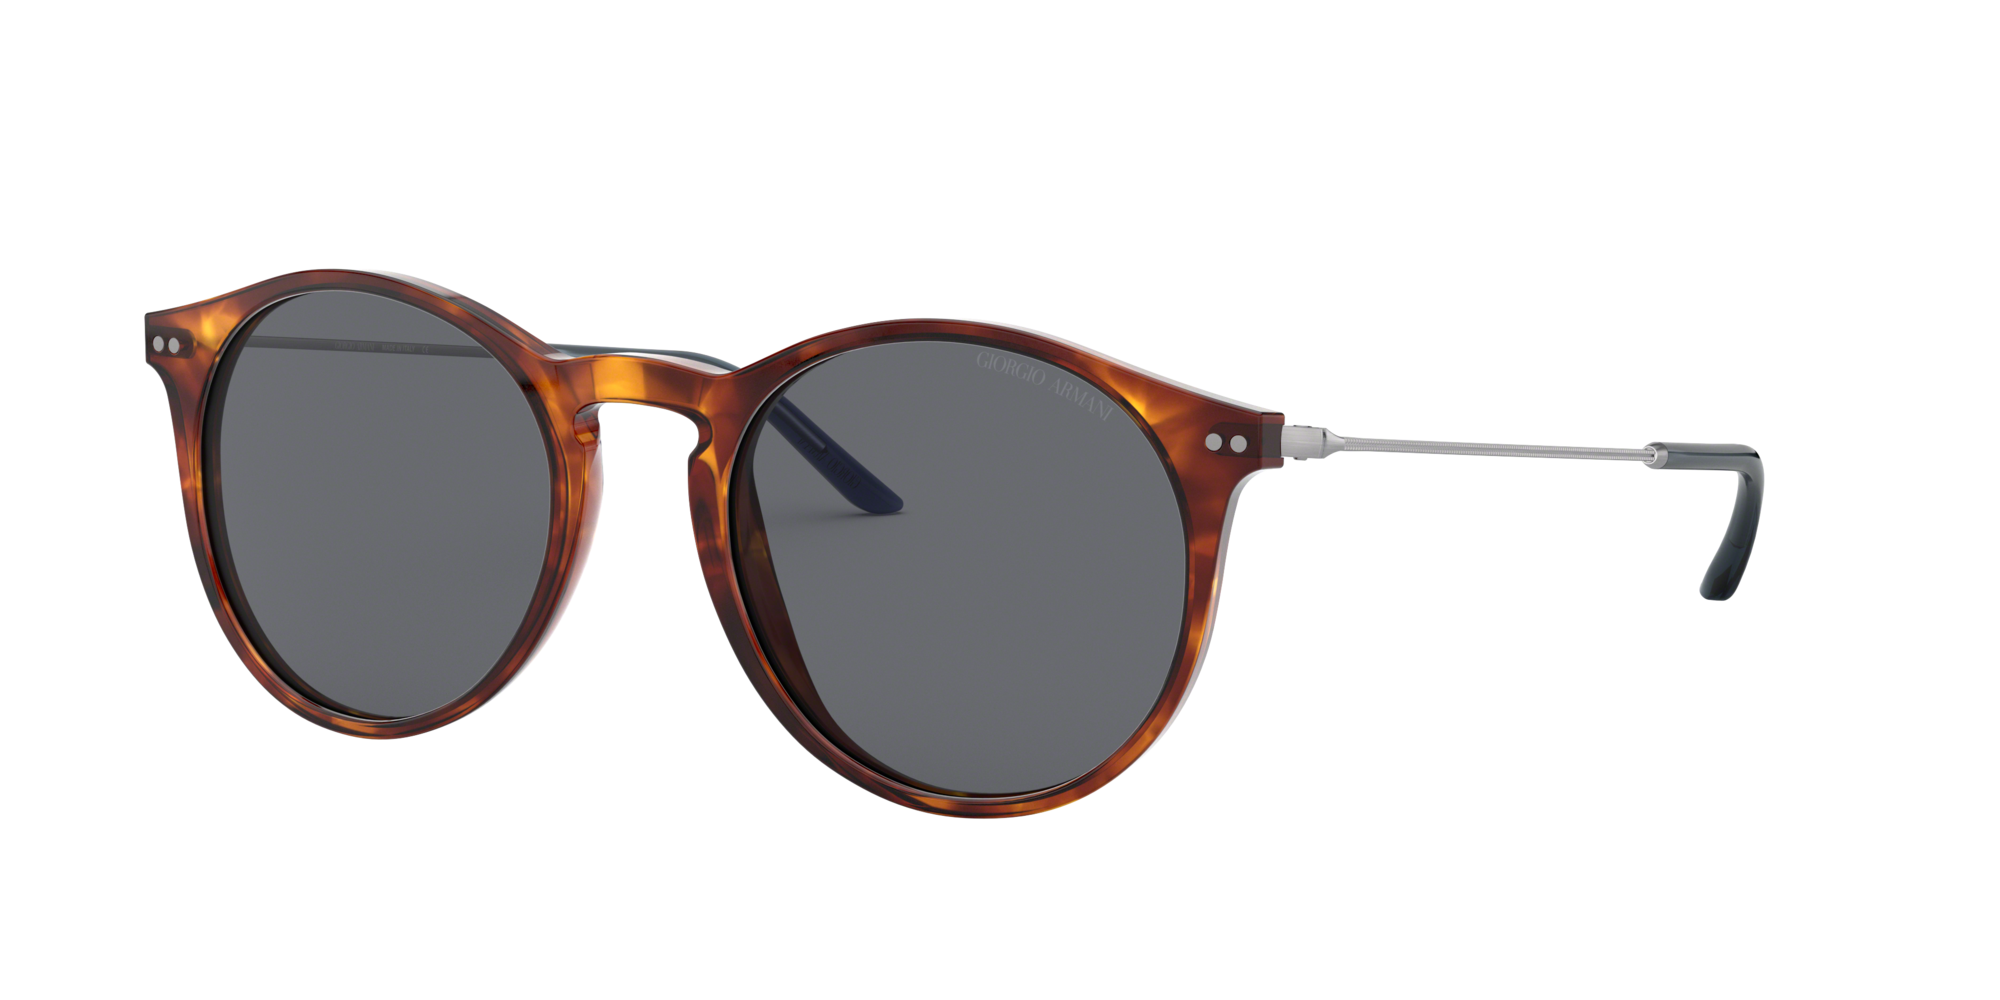 Consulte nosso catálogo de Óculos de Sol Giorgio Armani Eyewear com diversos modelos e preços para sua escolha.